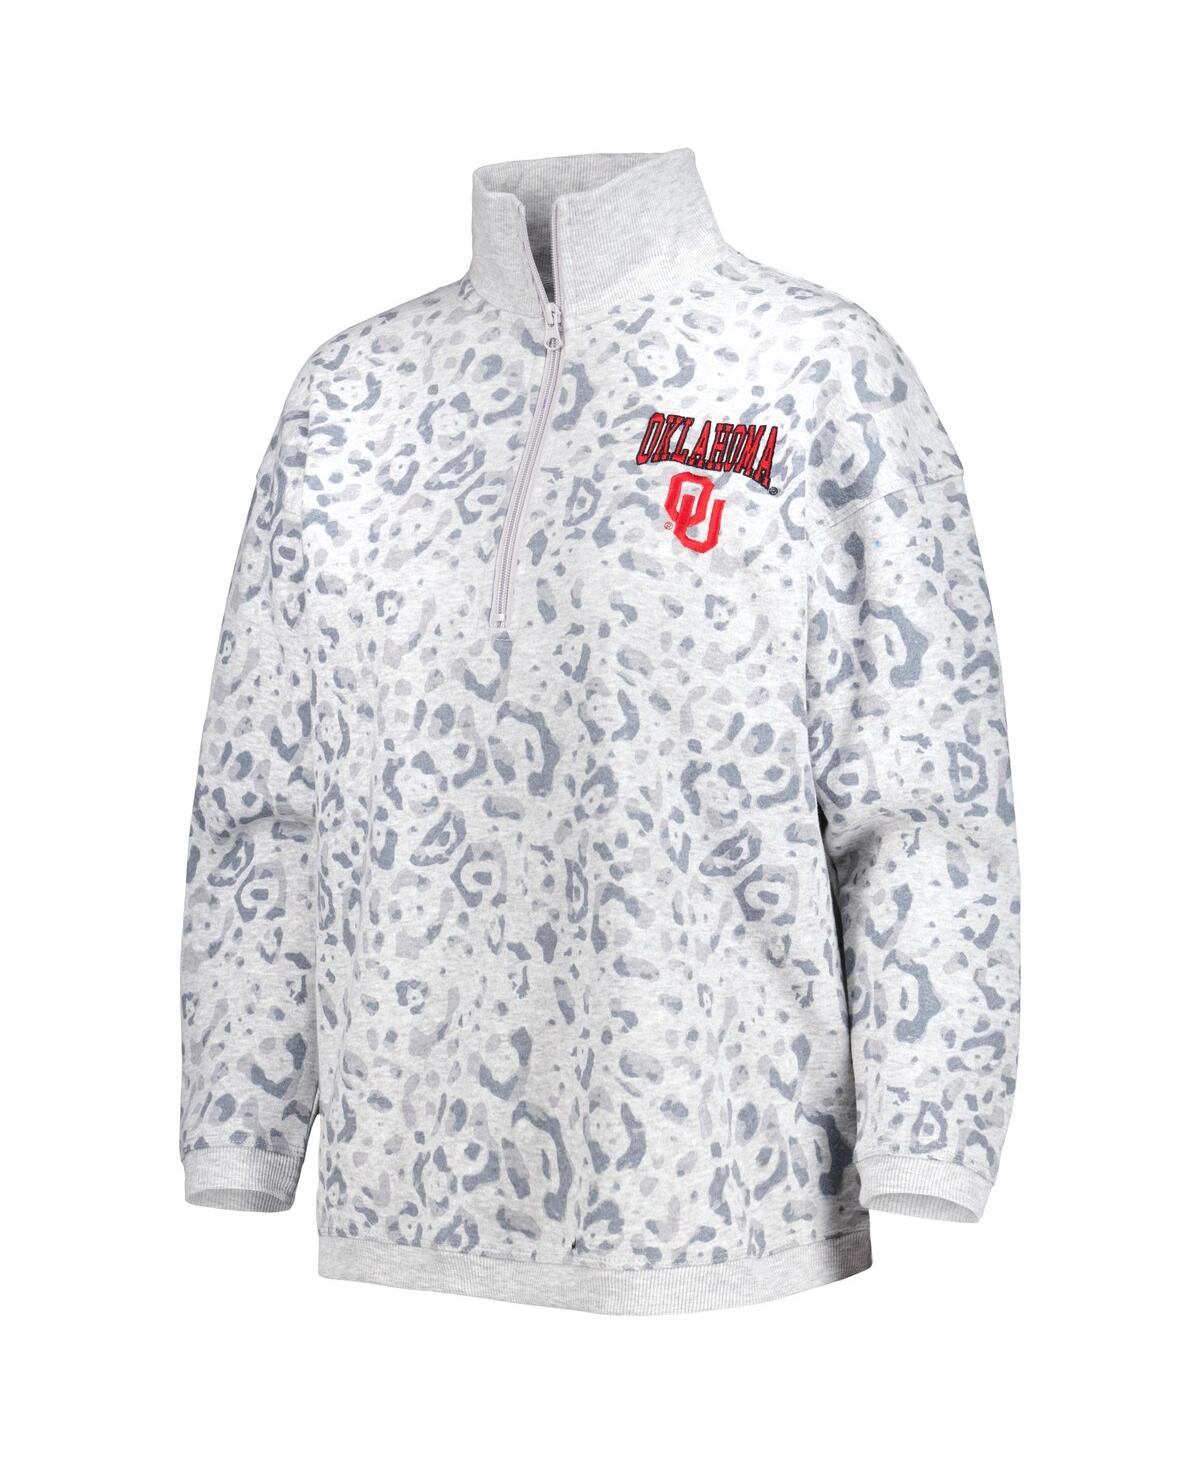 Shop Gameday Couture Women's  Heather Gray Oklahoma Sooners Leopard Quarter-zip Sweatshirt